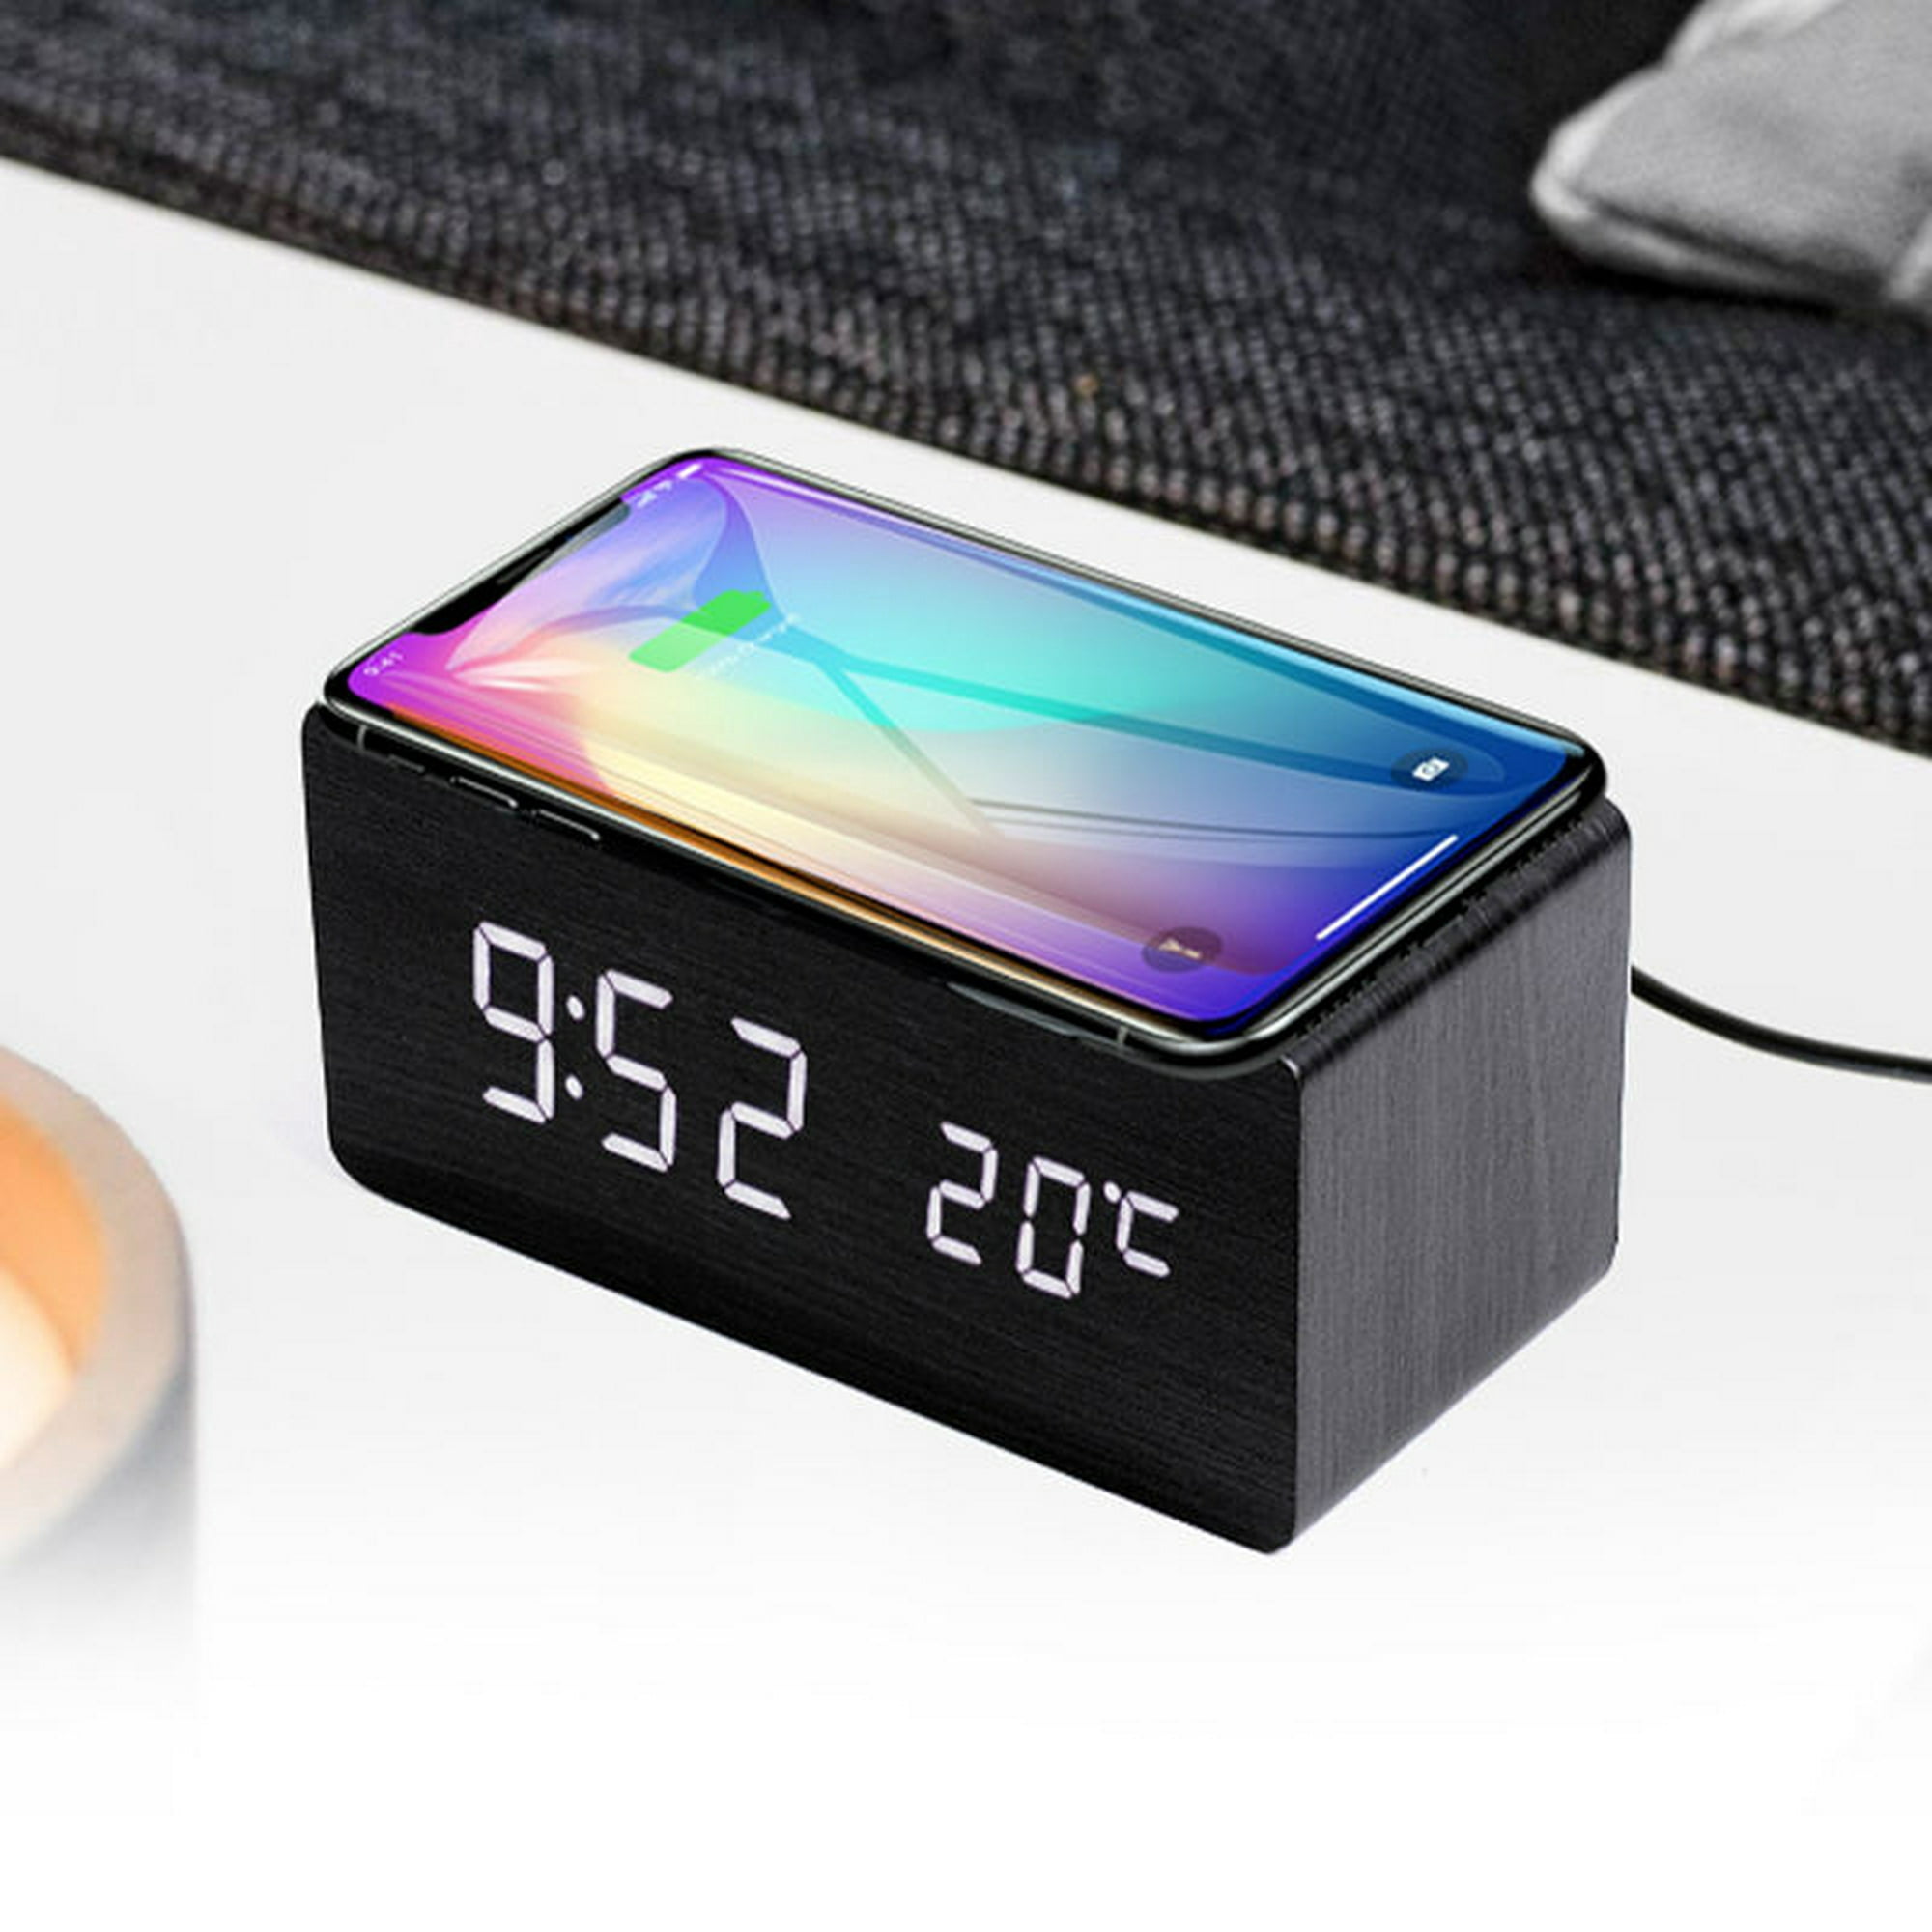 JALL Reloj despertador digital, con pantalla LED electrónica de madera,  alarma doble, mini relojes eléctricos cúbicos pequeños de madera de 2.5